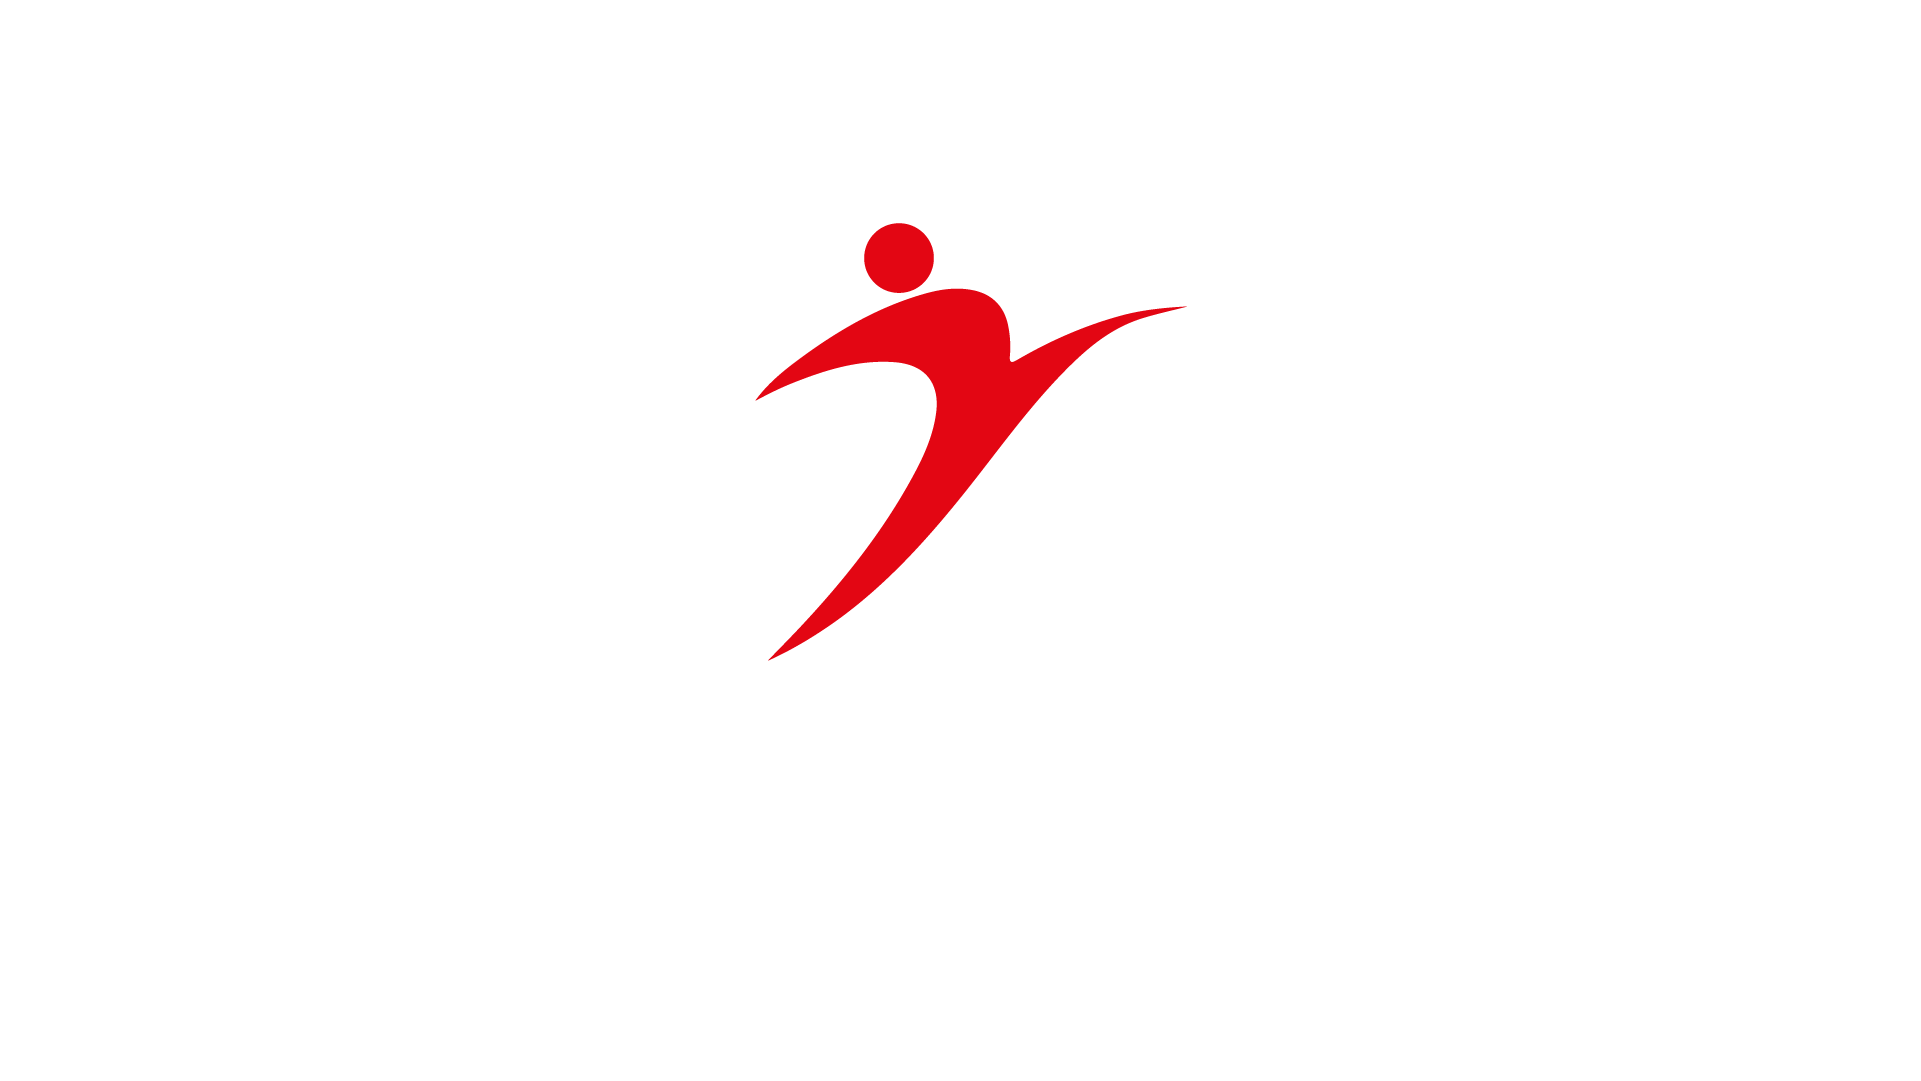 (c) Appefis.org